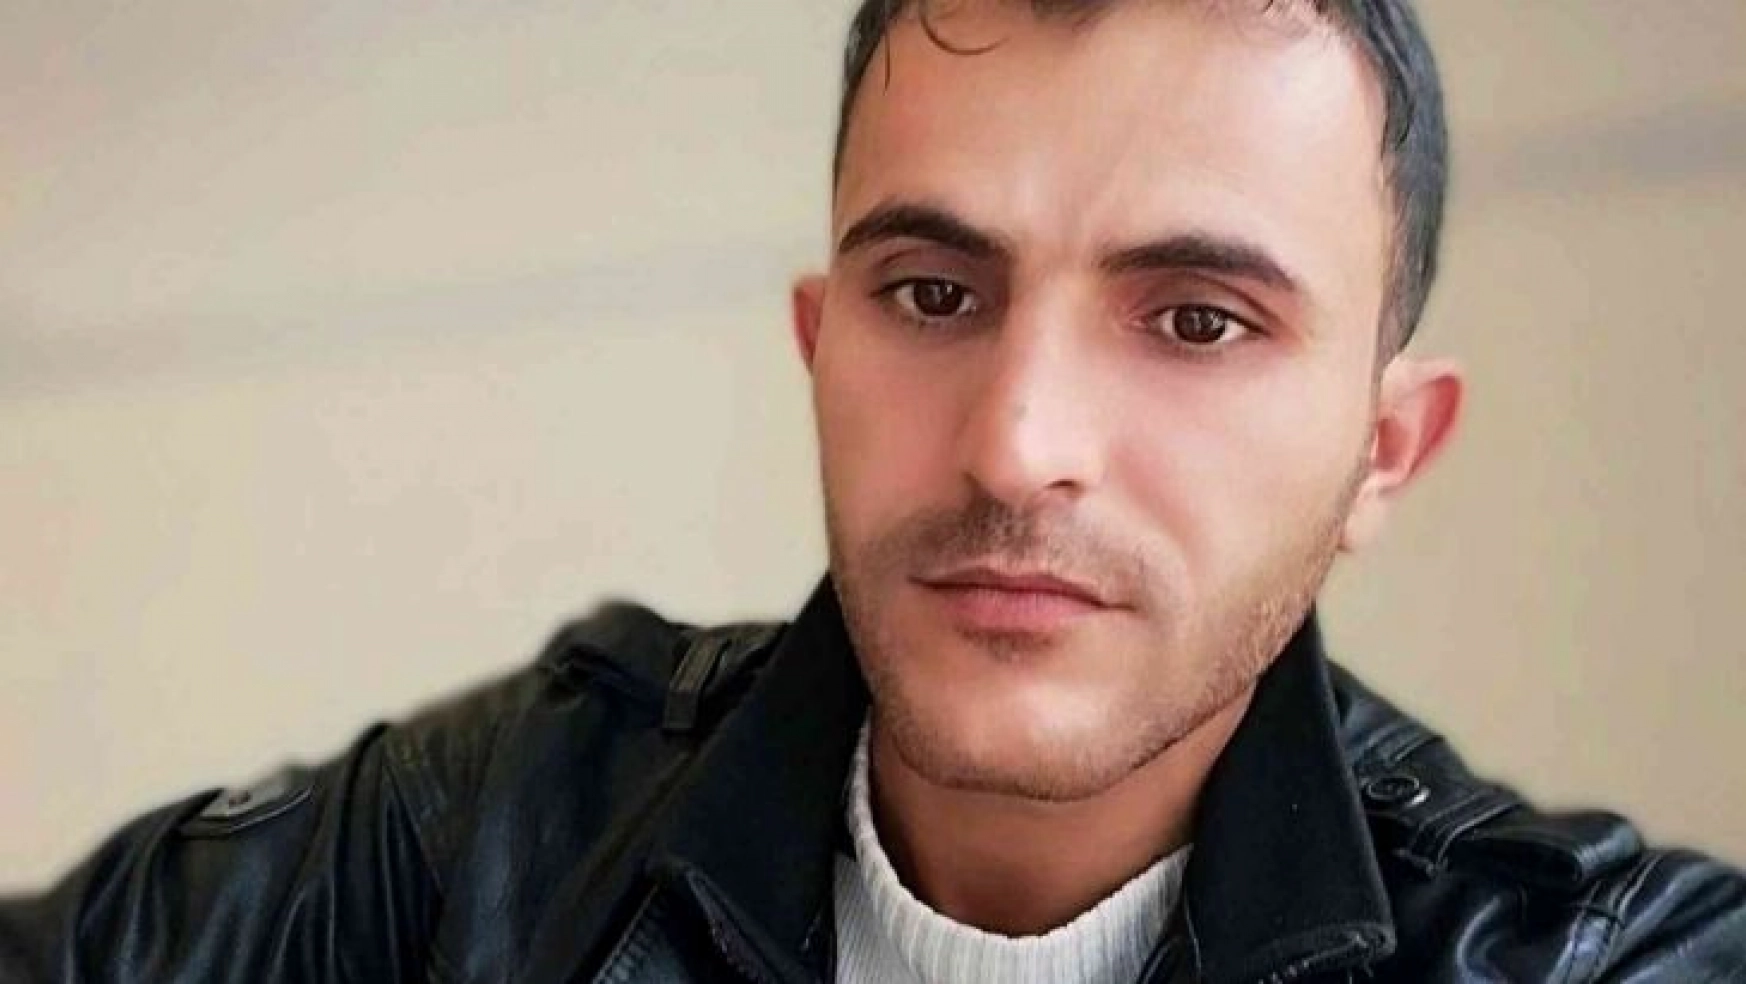 Mardin'de 32 yaşındaki gencin cinayete kurban gittiği ortaya çıktı